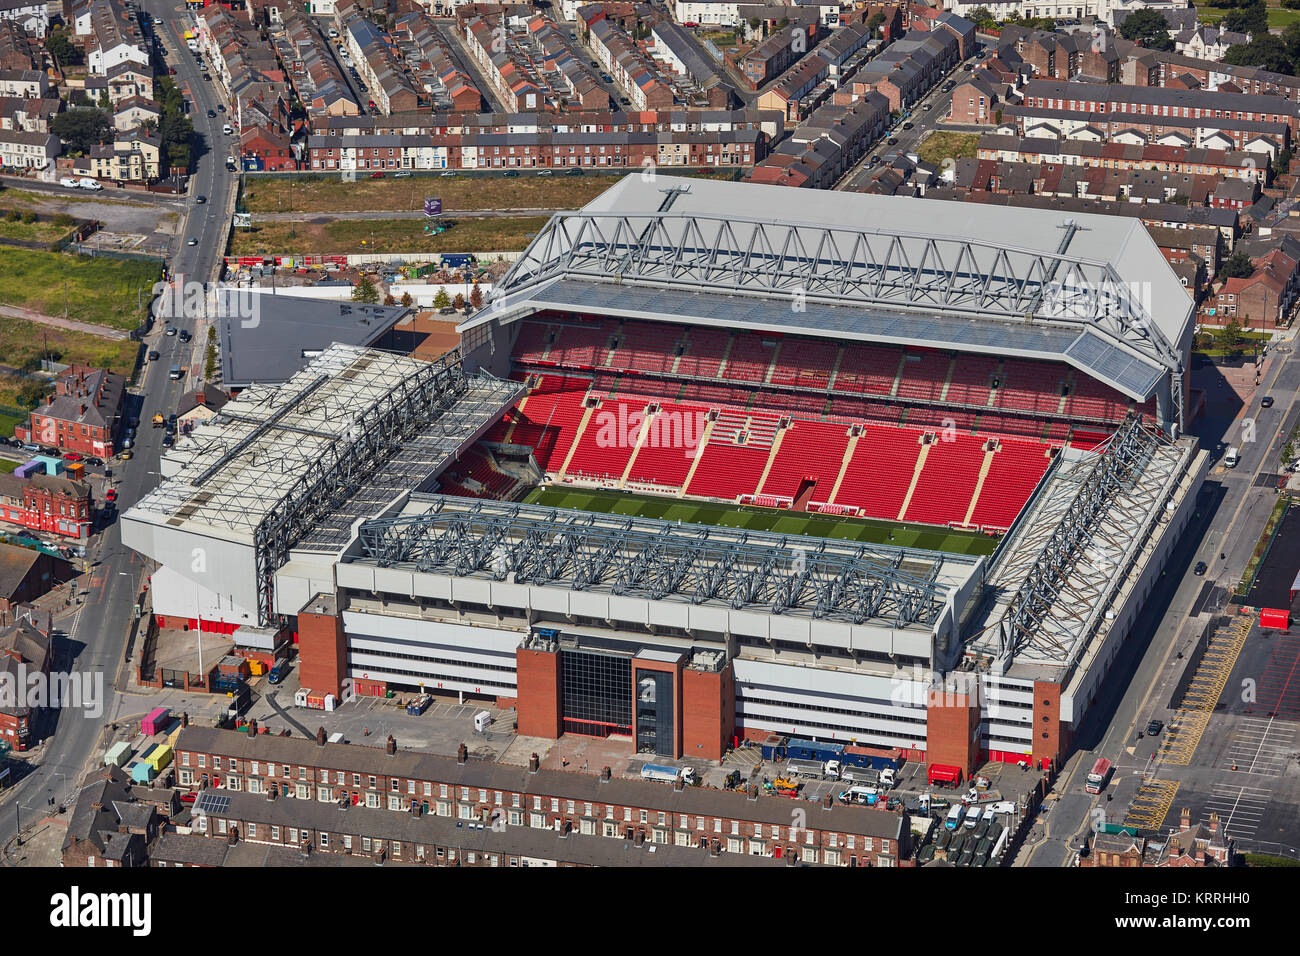 Eine Luftaufnahme von Anfield Stadion, Heimat des FC Liverpool Stockfoto